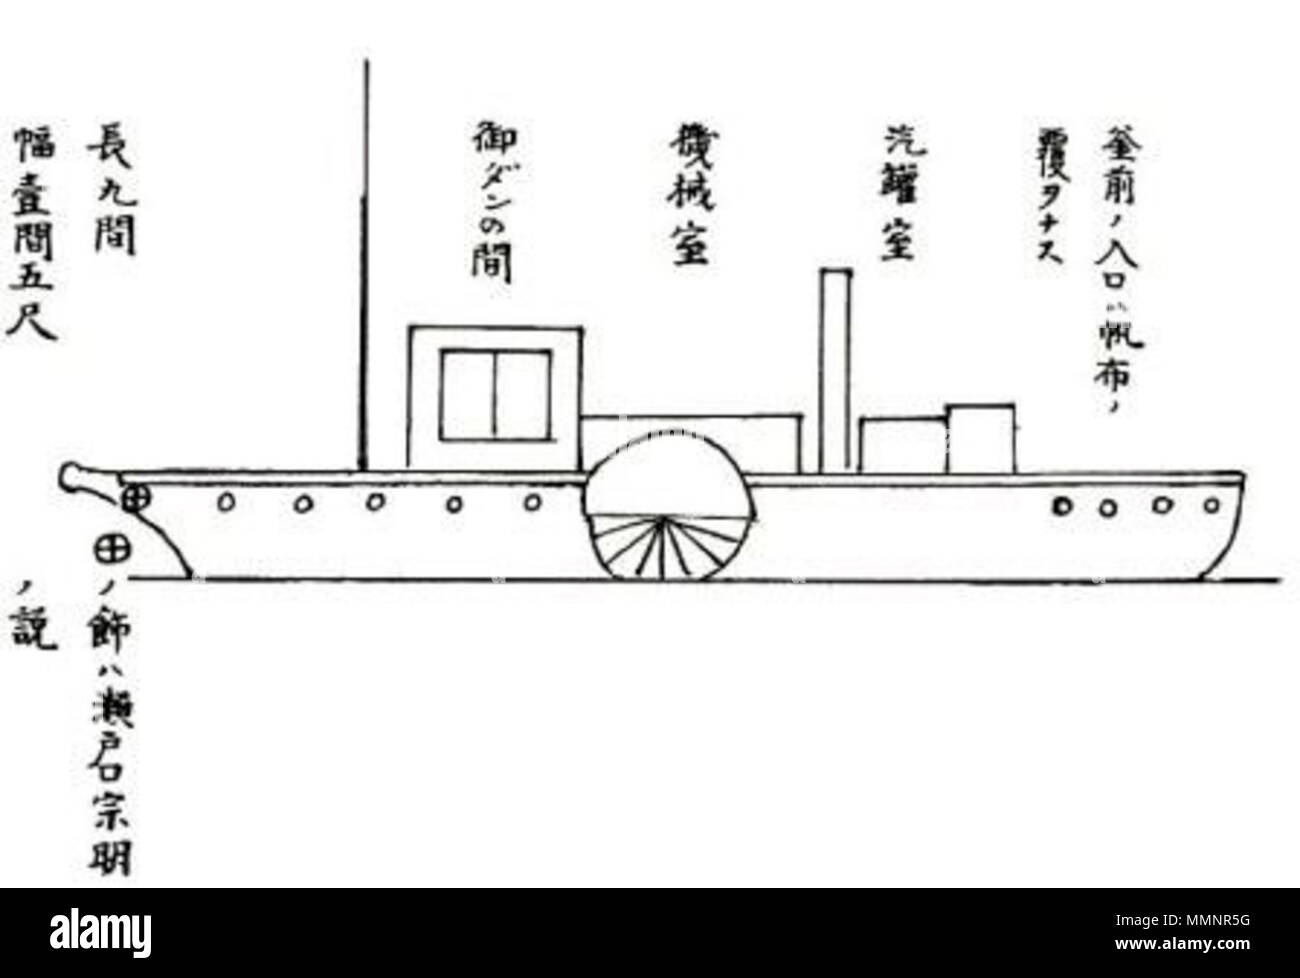 . Inglese: Unkou Maru è il primo battello a vapore costruito in Giappone. Fu costruita dal dominio di satsuma nel 1855. Questo disegno è stato realizzato da Machida Ryouemon nel periodo Meiji, ma non in modo preciso. ??Ѵ??ެ?: ????????????????????ѵ???????????????+??????????????Ʃ???????????????????????????1855զ?????+?????????????????????????????????ĵ?+????+?????????????????????????????????????????Ŧ??????????????????????????????????????????????????赡???????????????????????????? . Periodo Meiji. Machida Ryouemon ( UnkouMaru Foto Stock